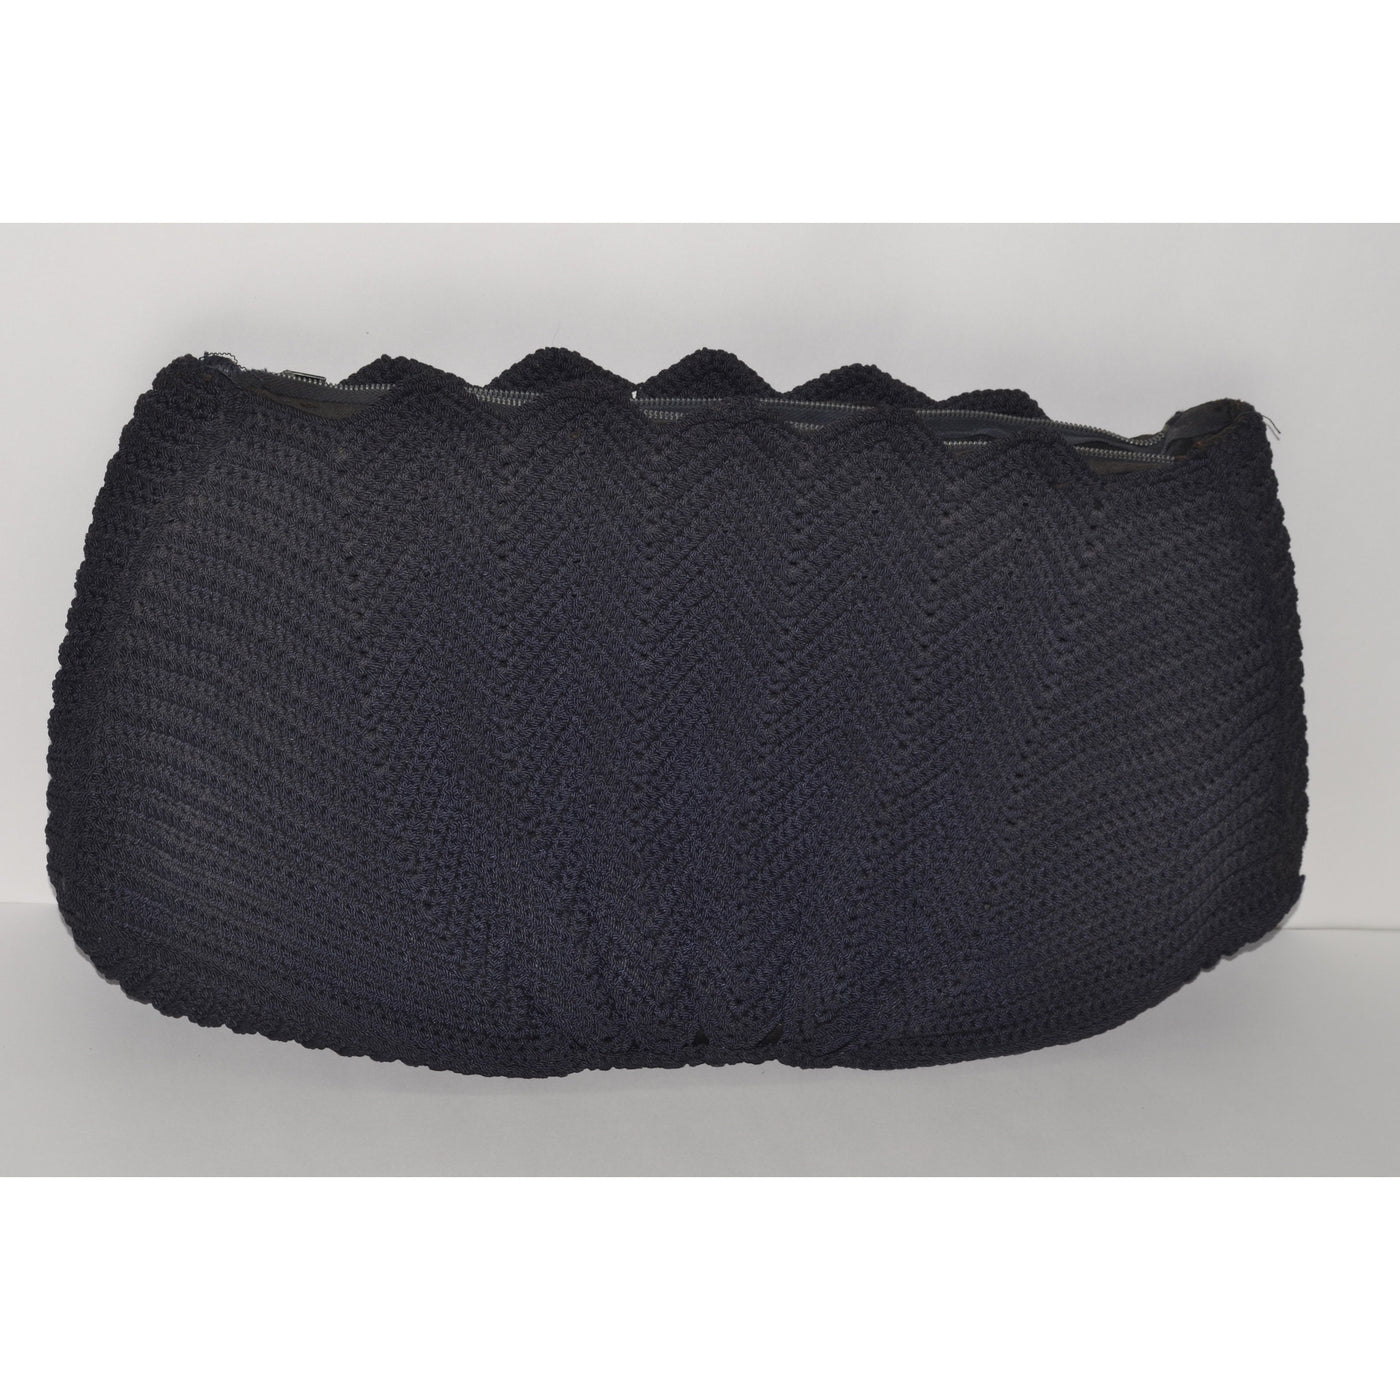 Vintage Black Crochet Fan Clutch Purse